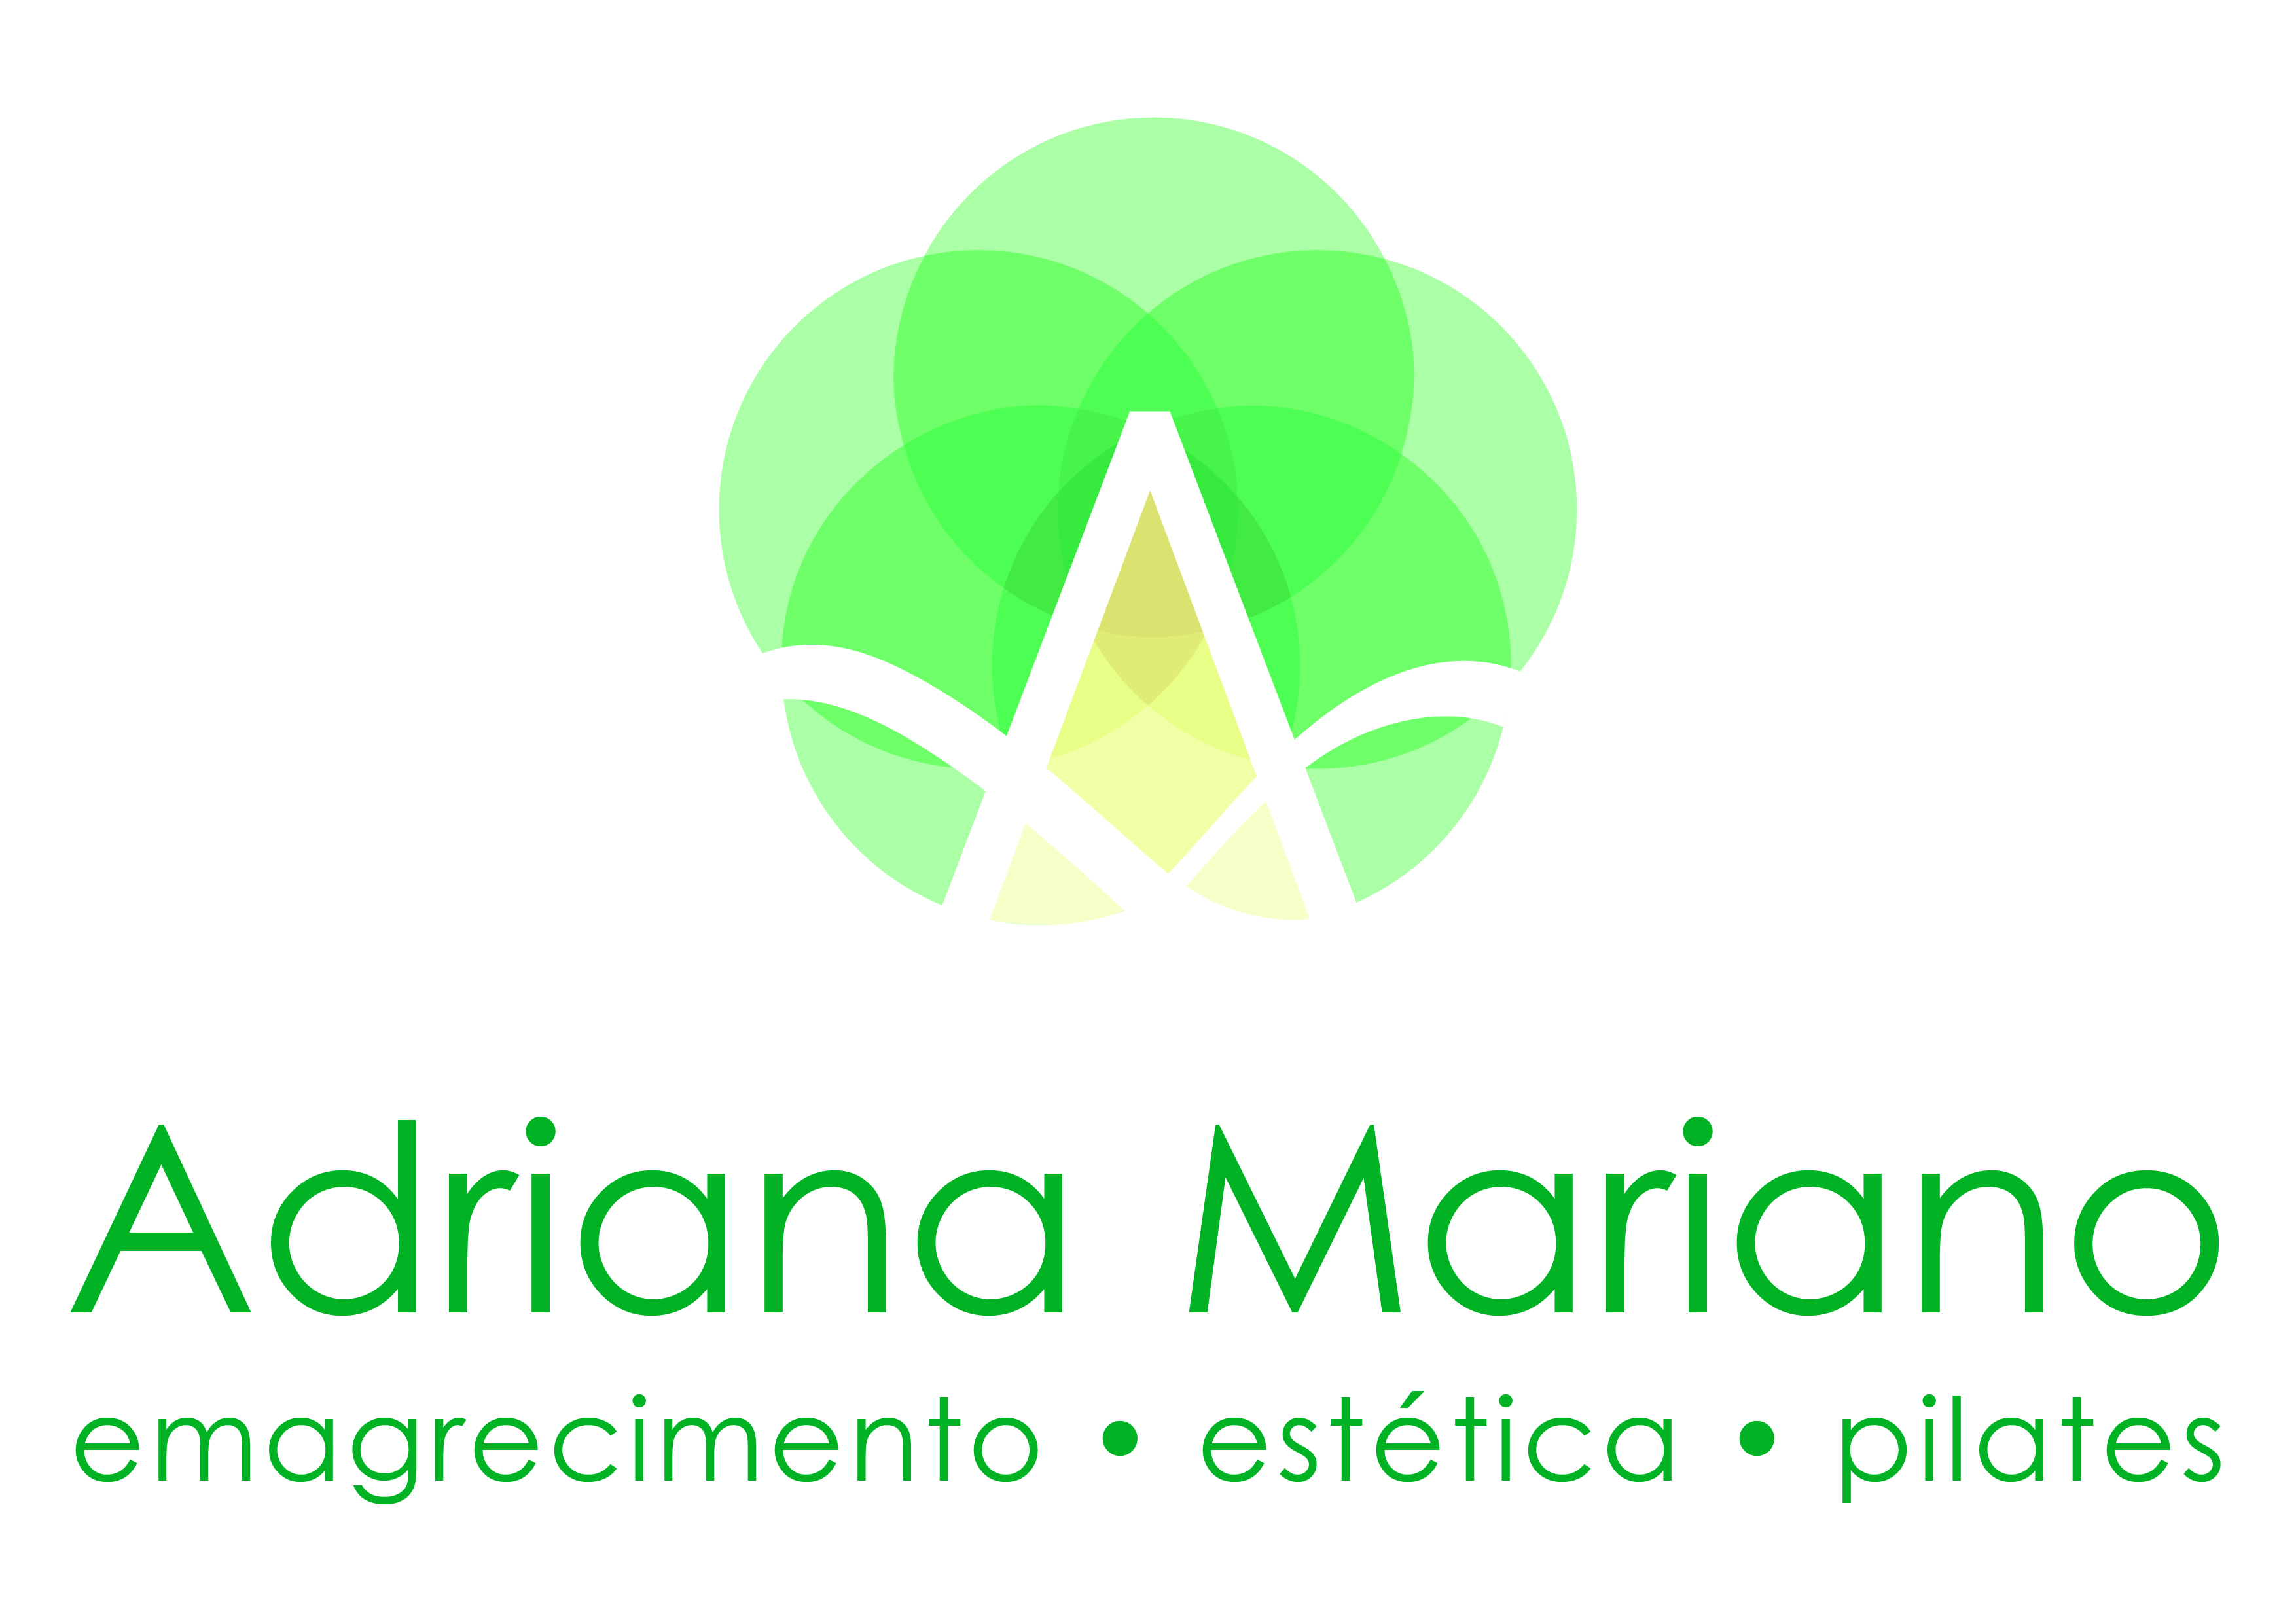 Adriana Mariano